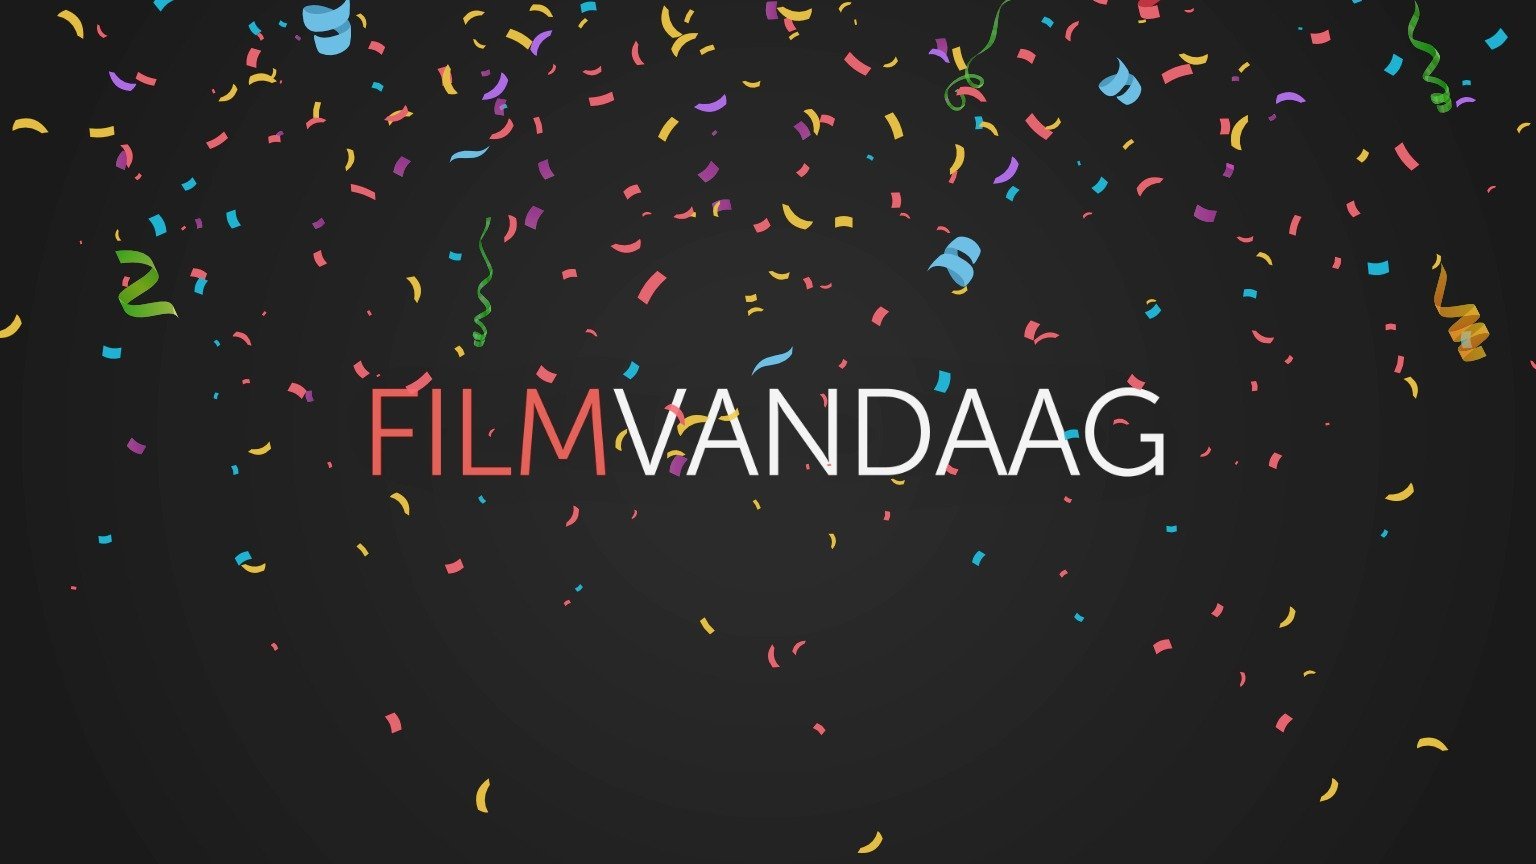 FilmVandaag.nl uitgeroepen tot 'Beste Media-website' van het jaar